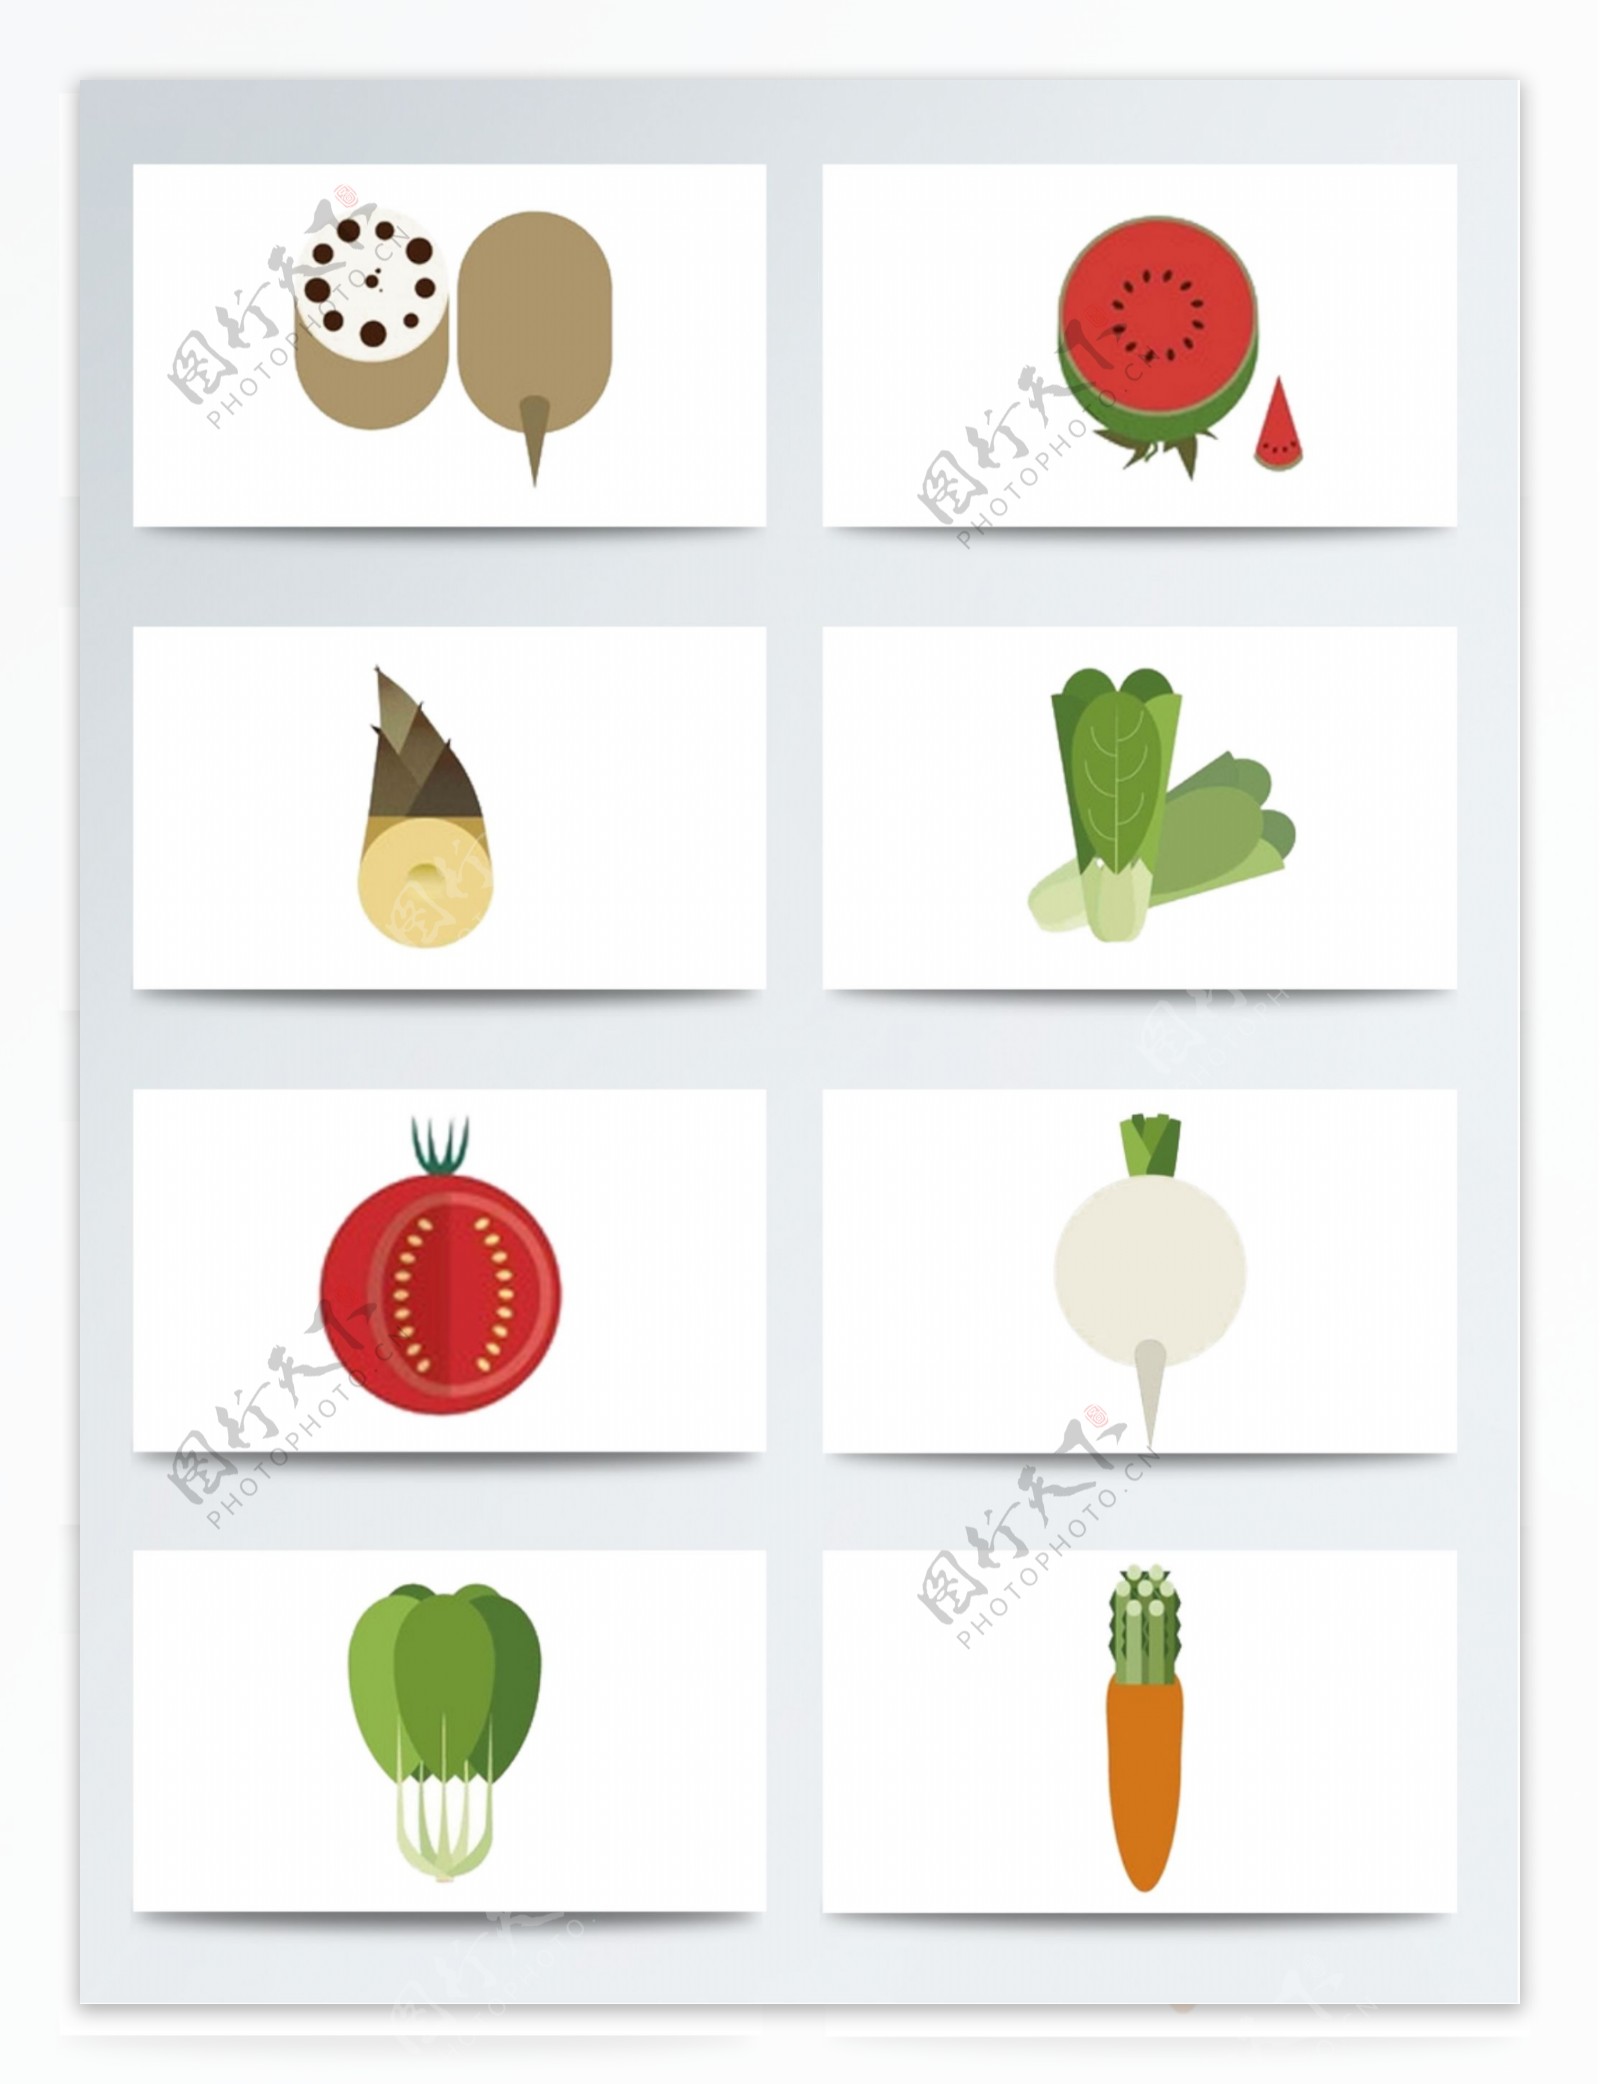 扁平化卡通水果蔬菜素材